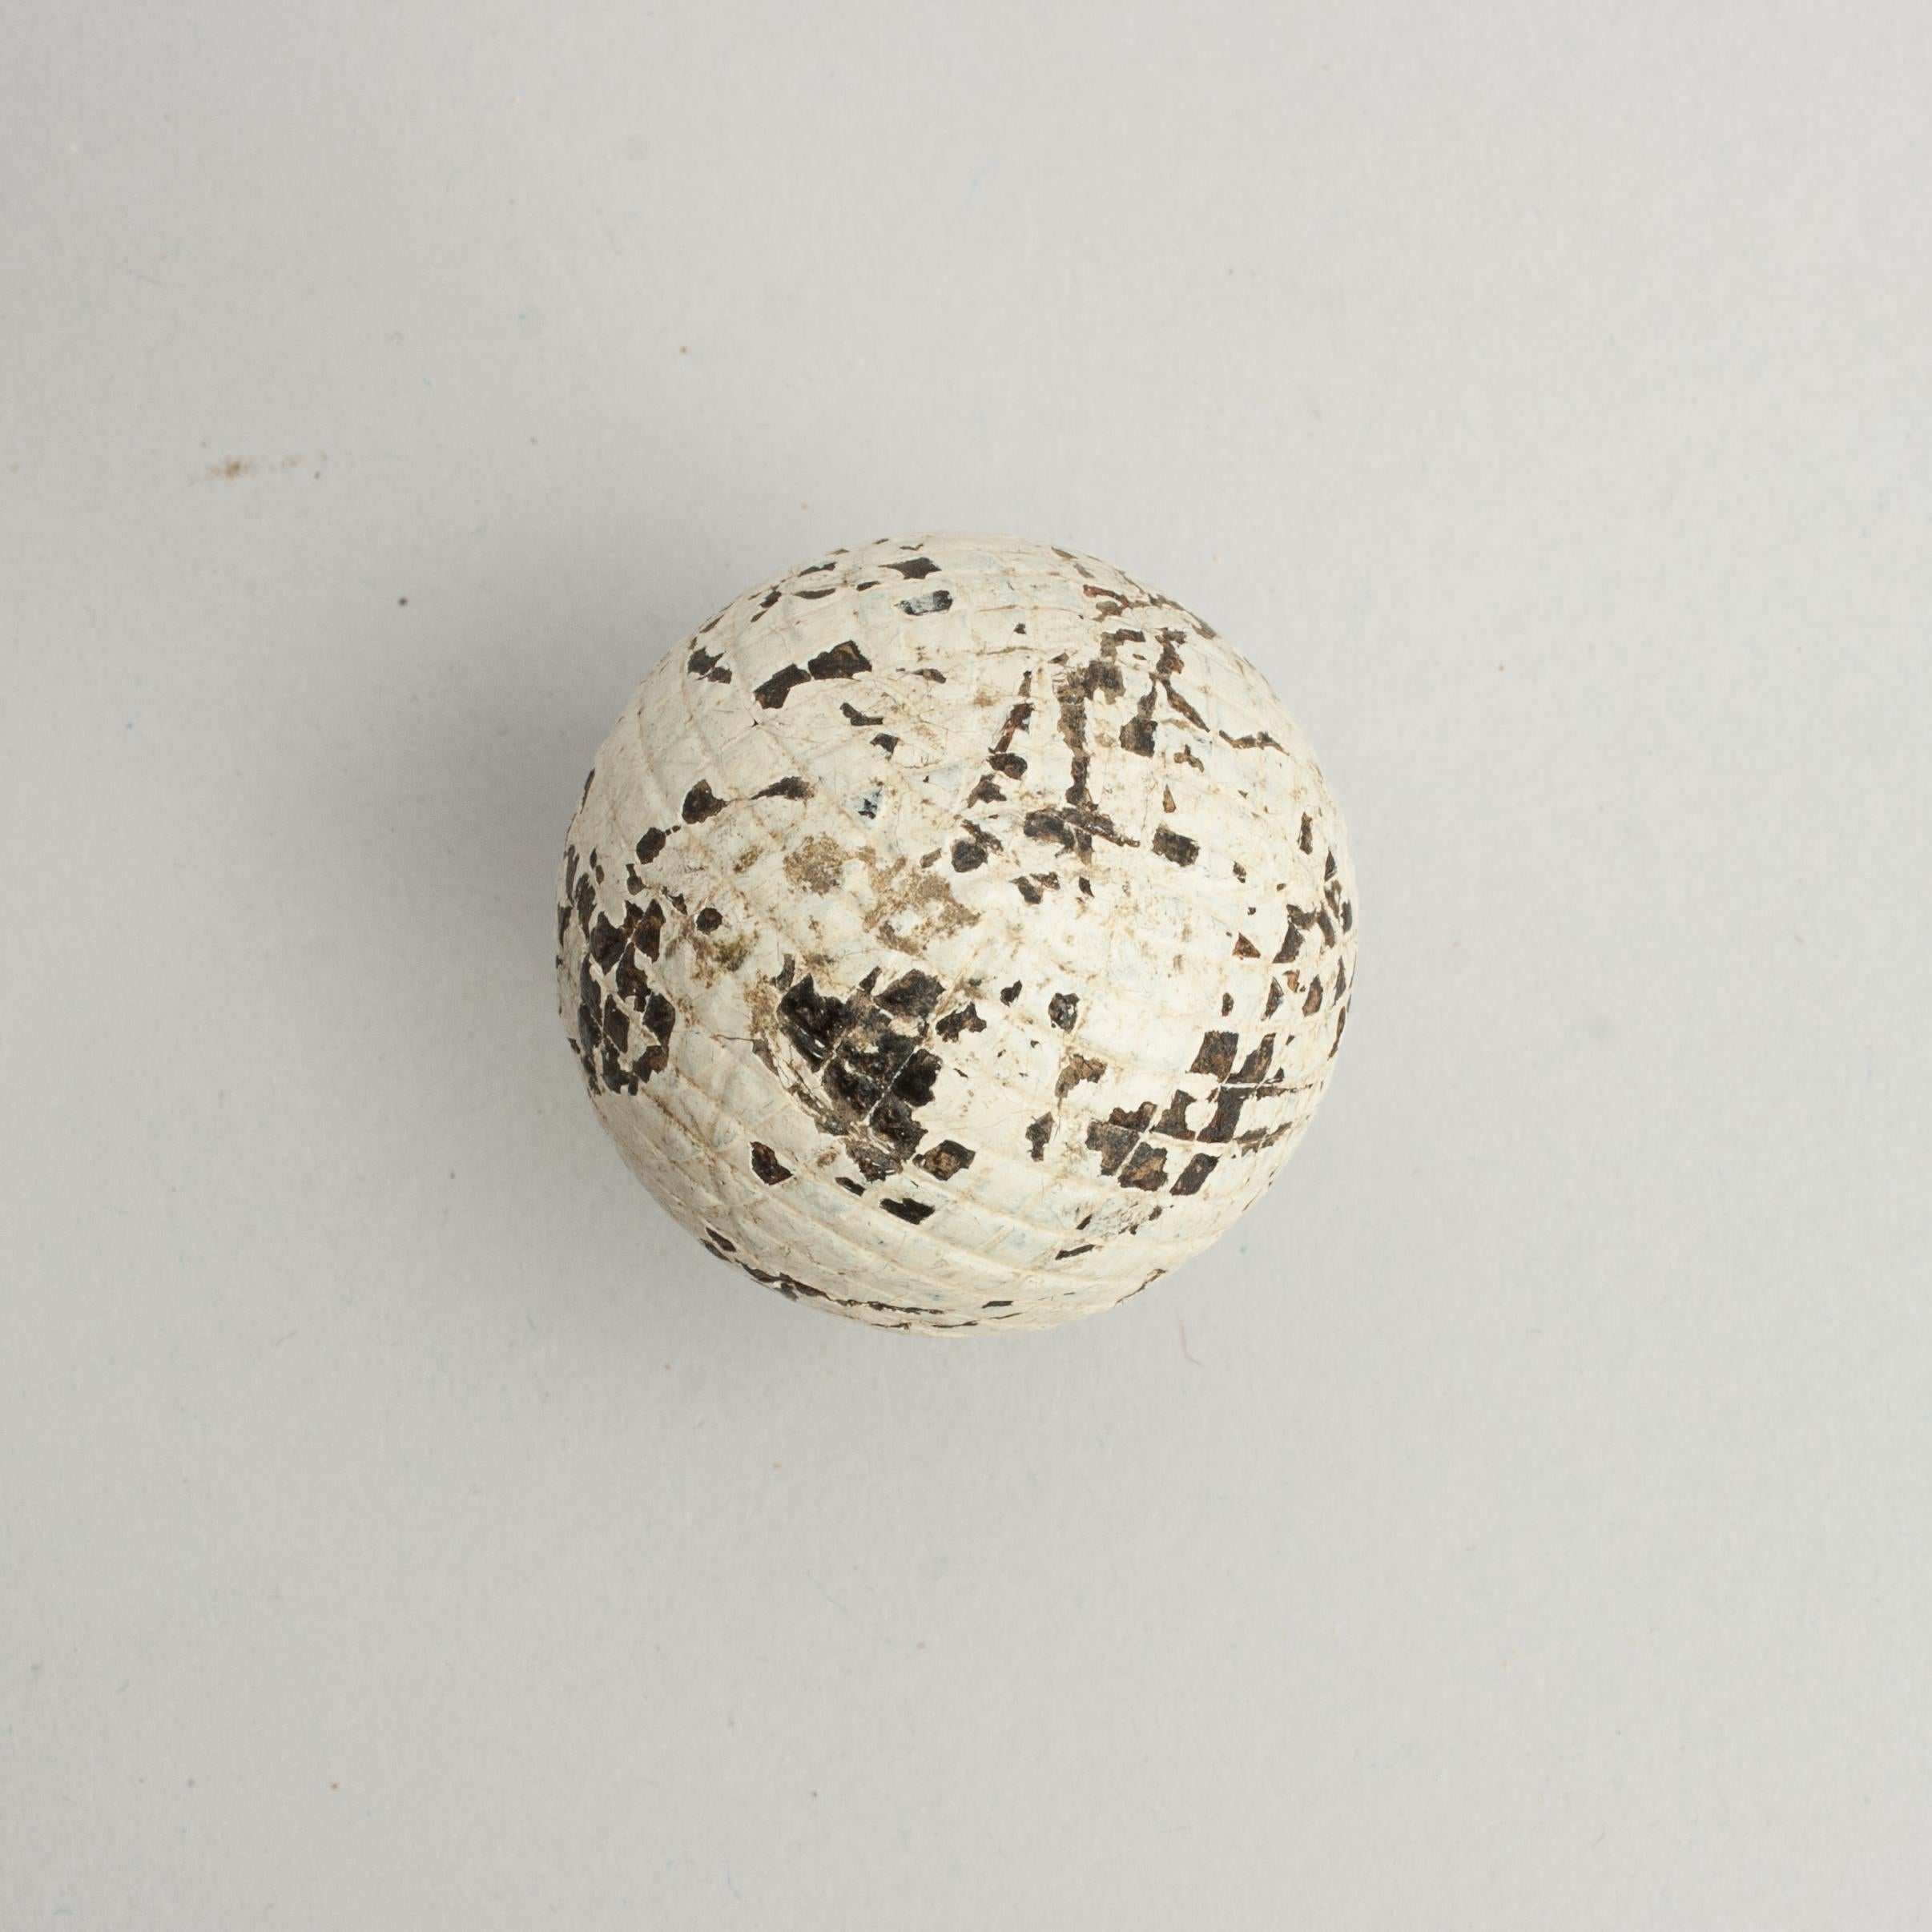 Unbenannter Mesh Pattern Gutty Golfball.
Ein geformter Guttapercha-Golfball mit quadratischem Netzmuster in gebrauchtem Zustand. Der Gutty-Ball aus den 1890er Jahren hat noch viel von der ursprünglichen weißen Farbe.

Die Kugel hat einen Durchmesser